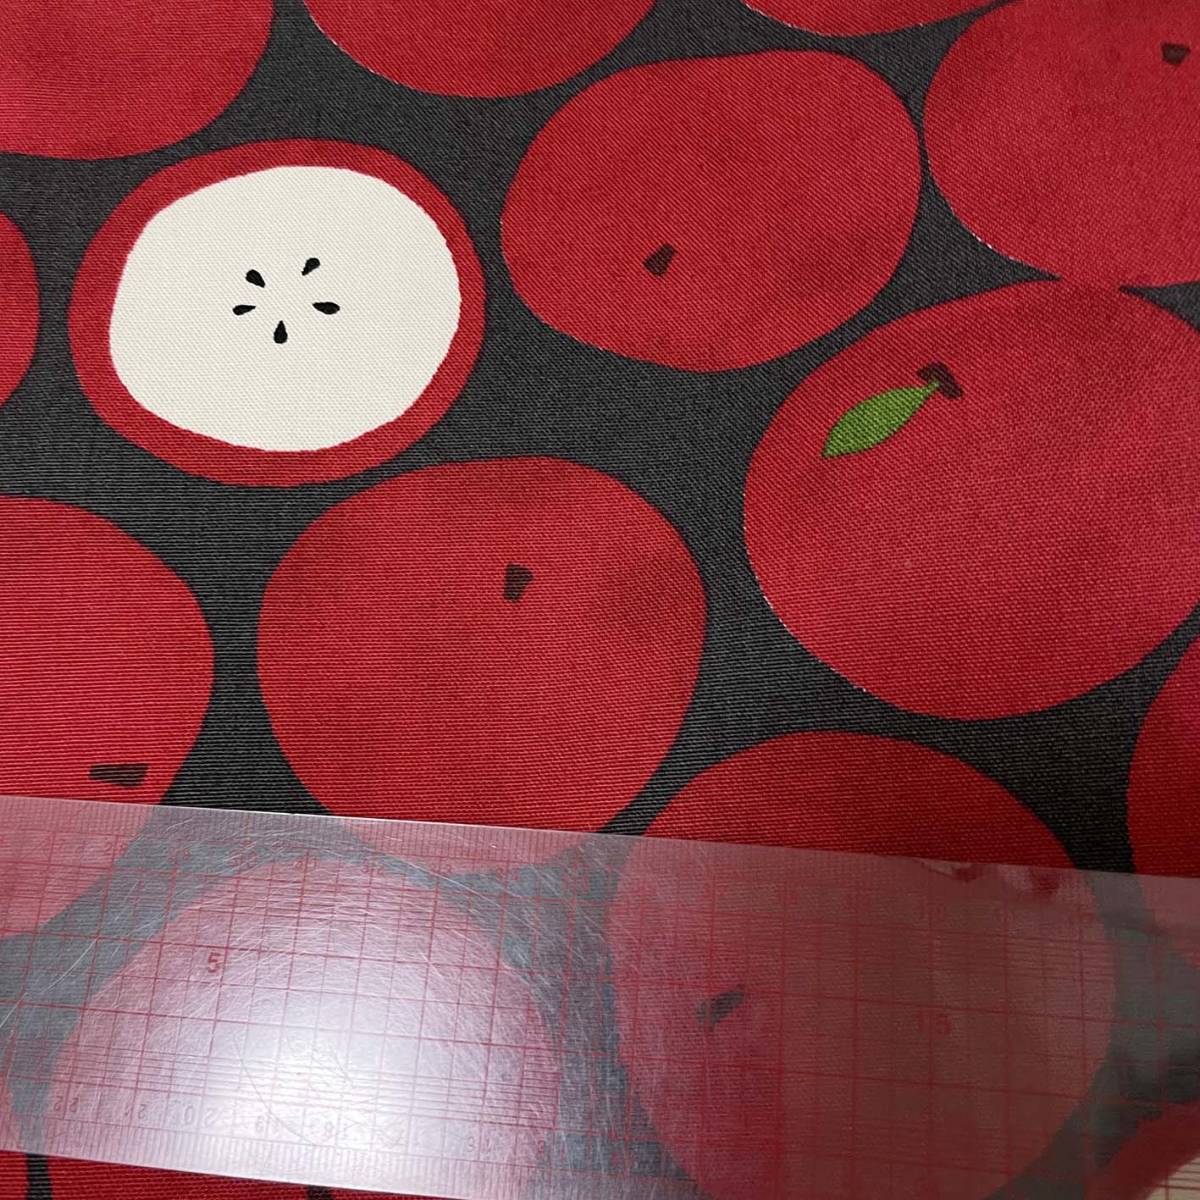  яблоко рисунок 2m хлопок oks ткань лоскут ткань яблоко Apple * красный точка полька-дот фрукты Северная Европа способ 